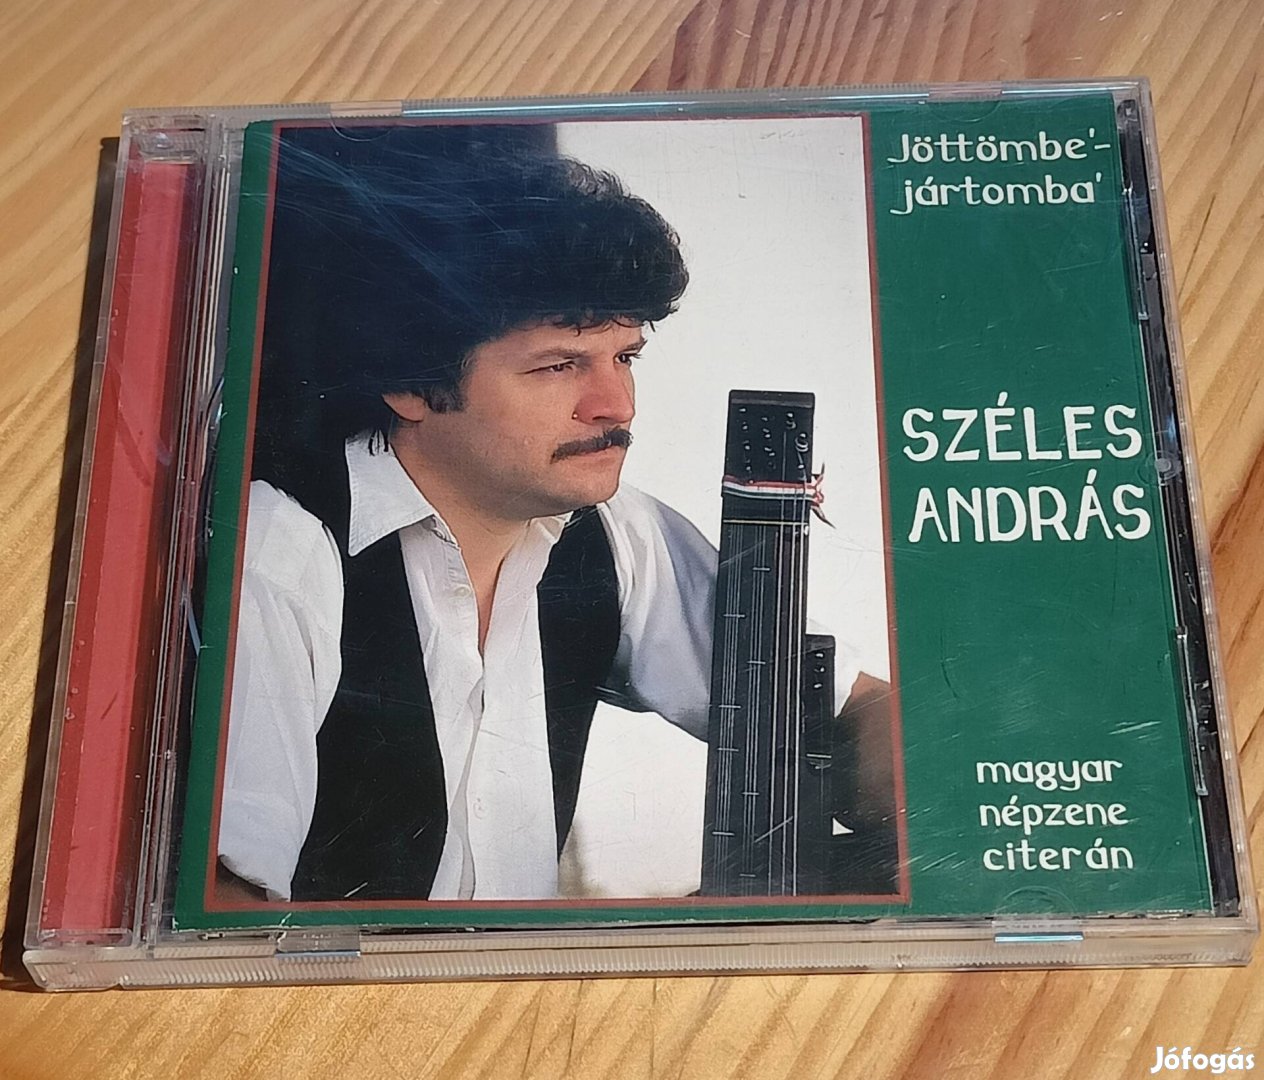 Széles András - Jöttömbe-jártomba CD